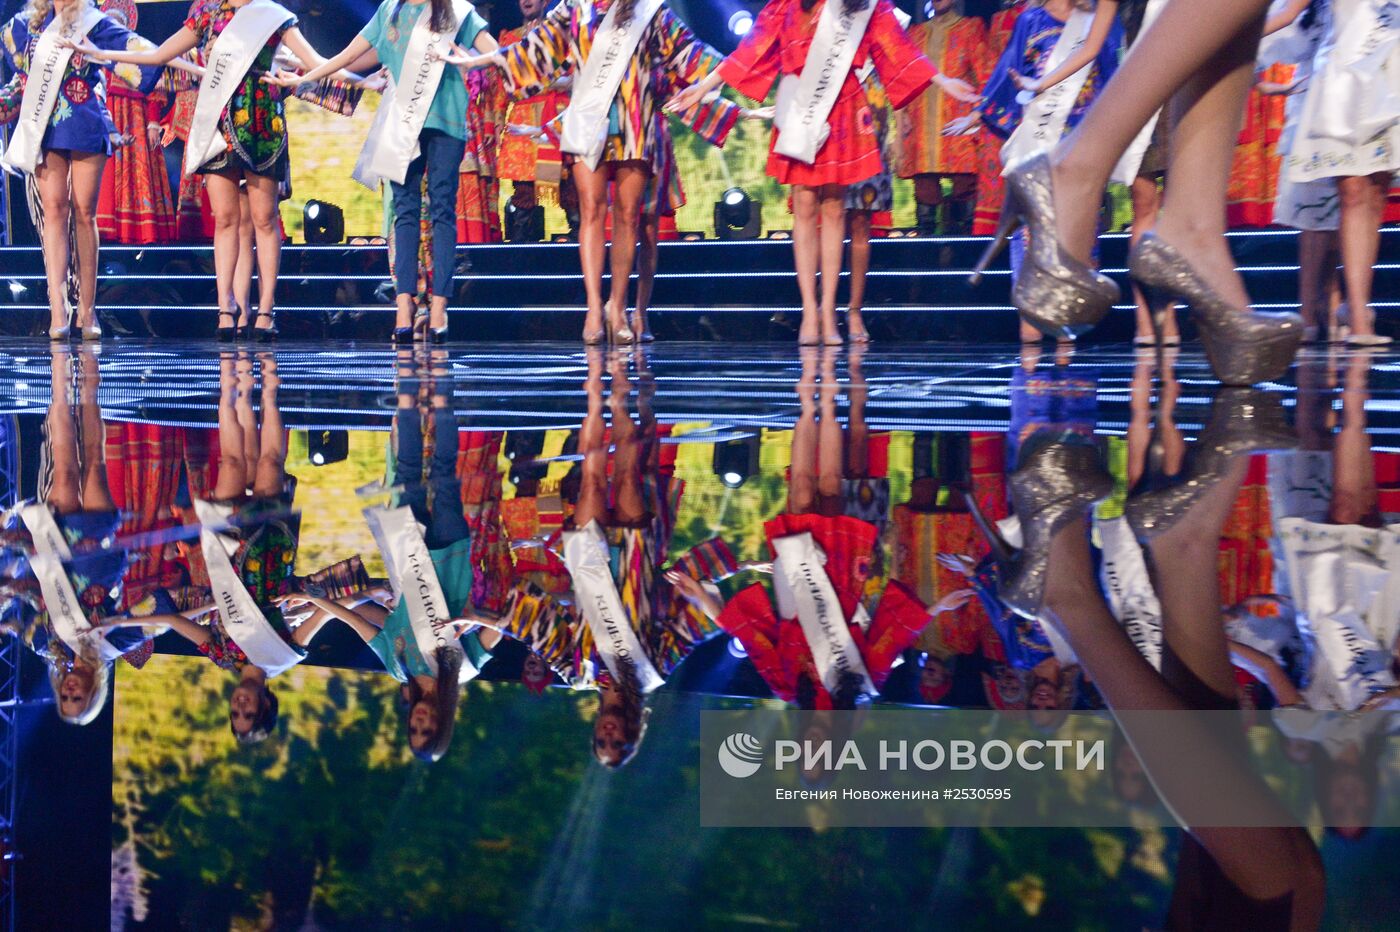 20-й фестиваль талантов и красоты "Краса России"